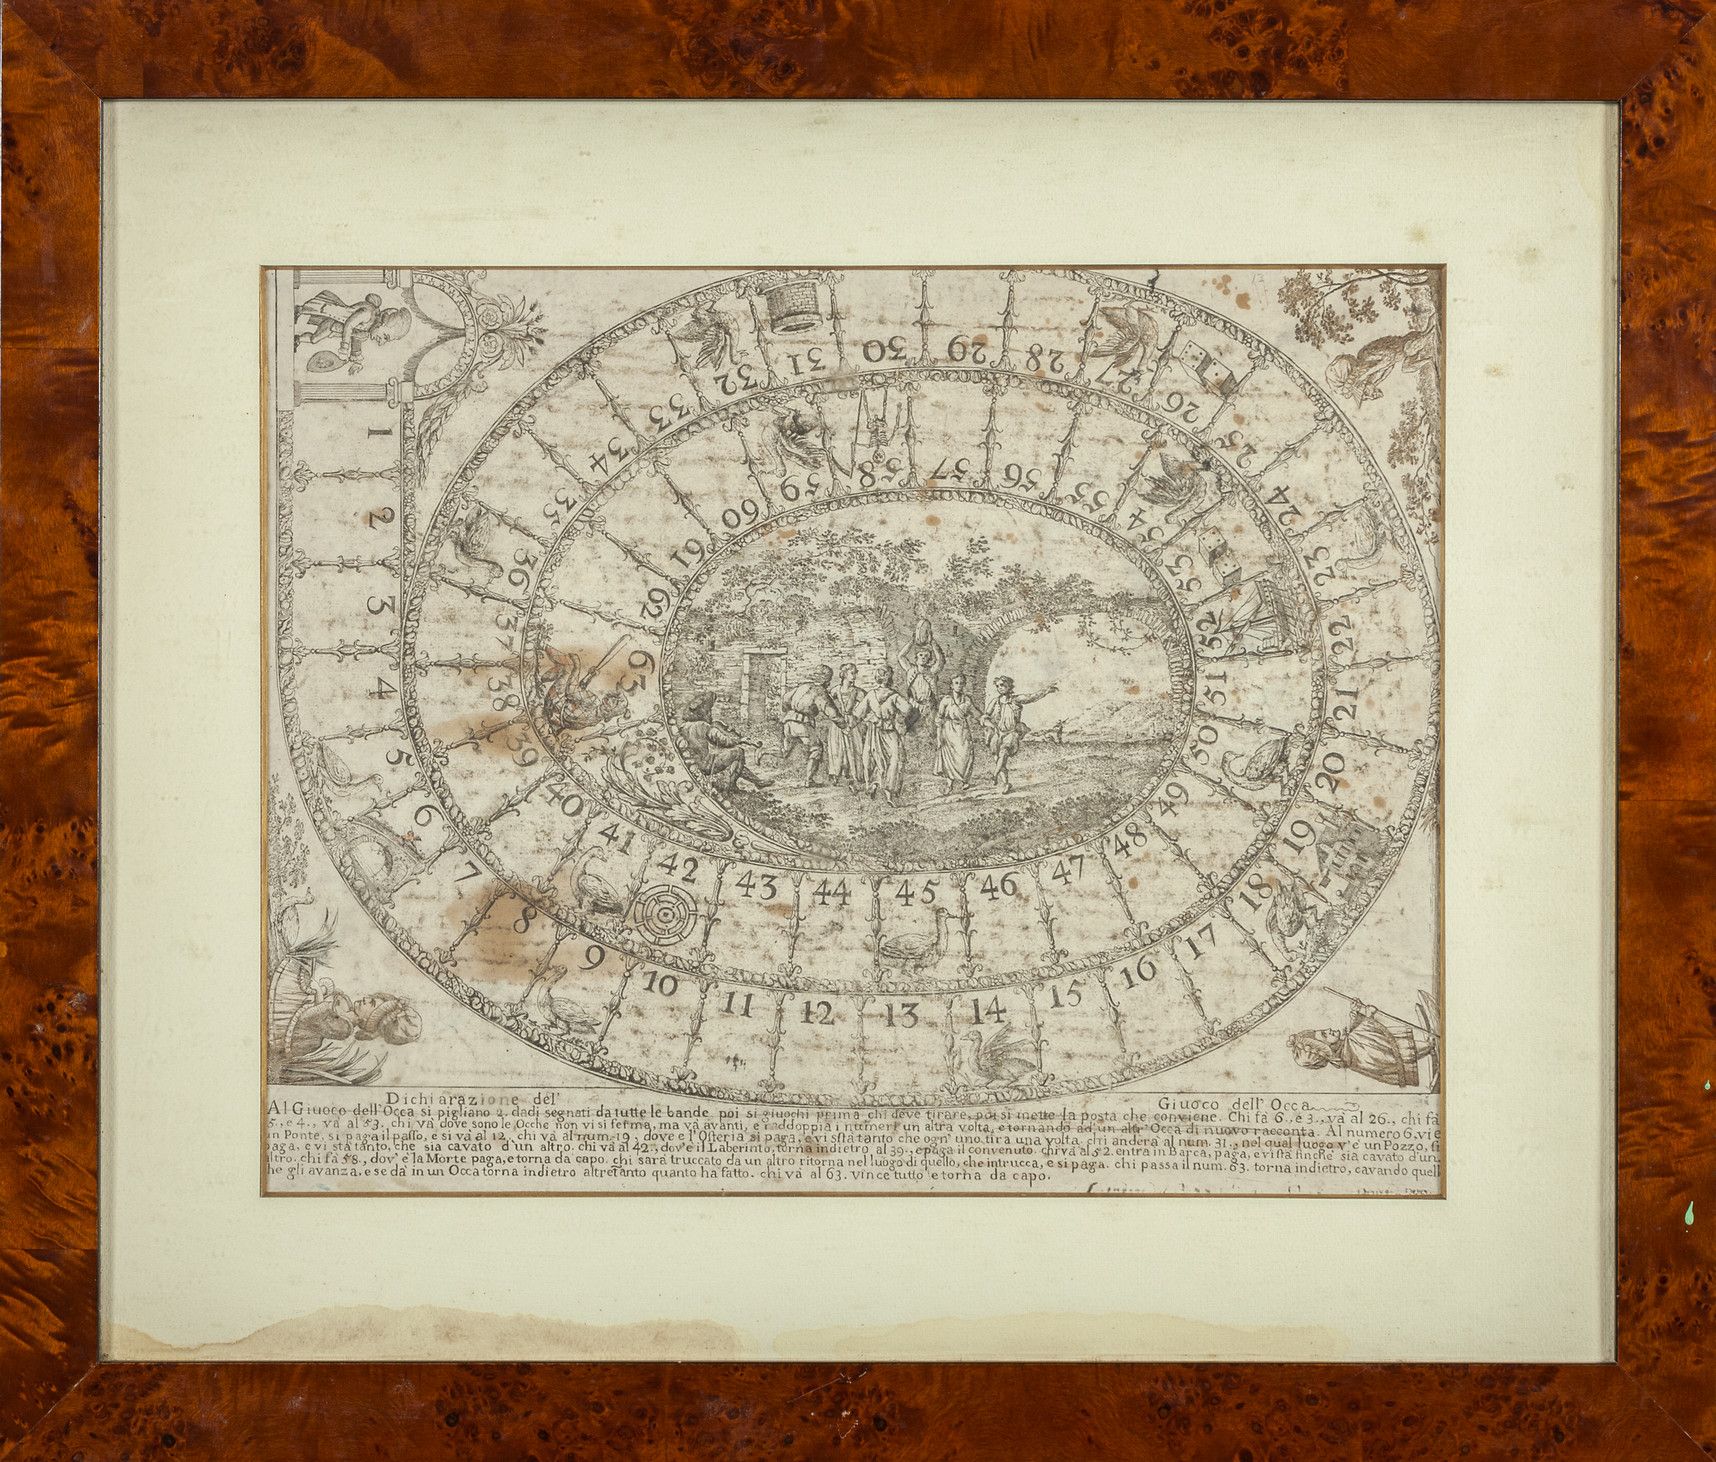 OGGETTISTICA Déclaration du jeu de l'oie Italie-Venise XVIIIe siècle
cm. 46x36